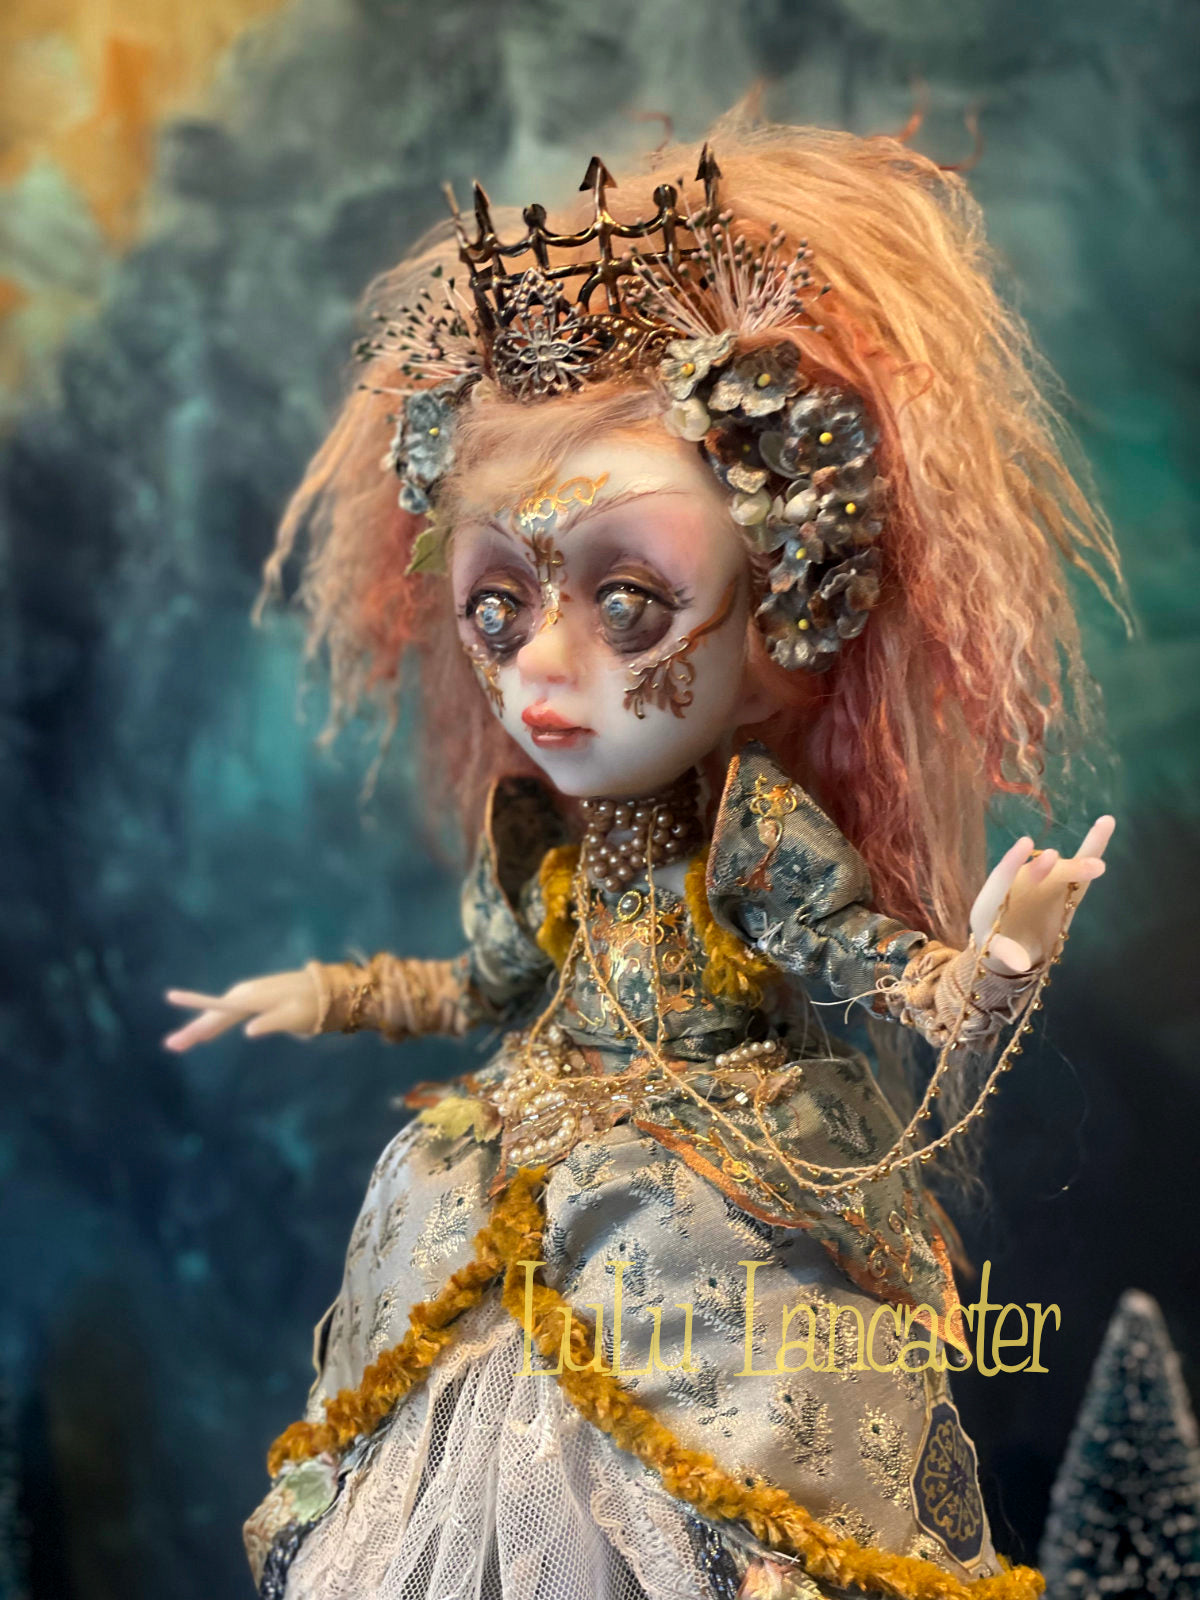 Winter Empress Original LuLu Lancaster Art Doll